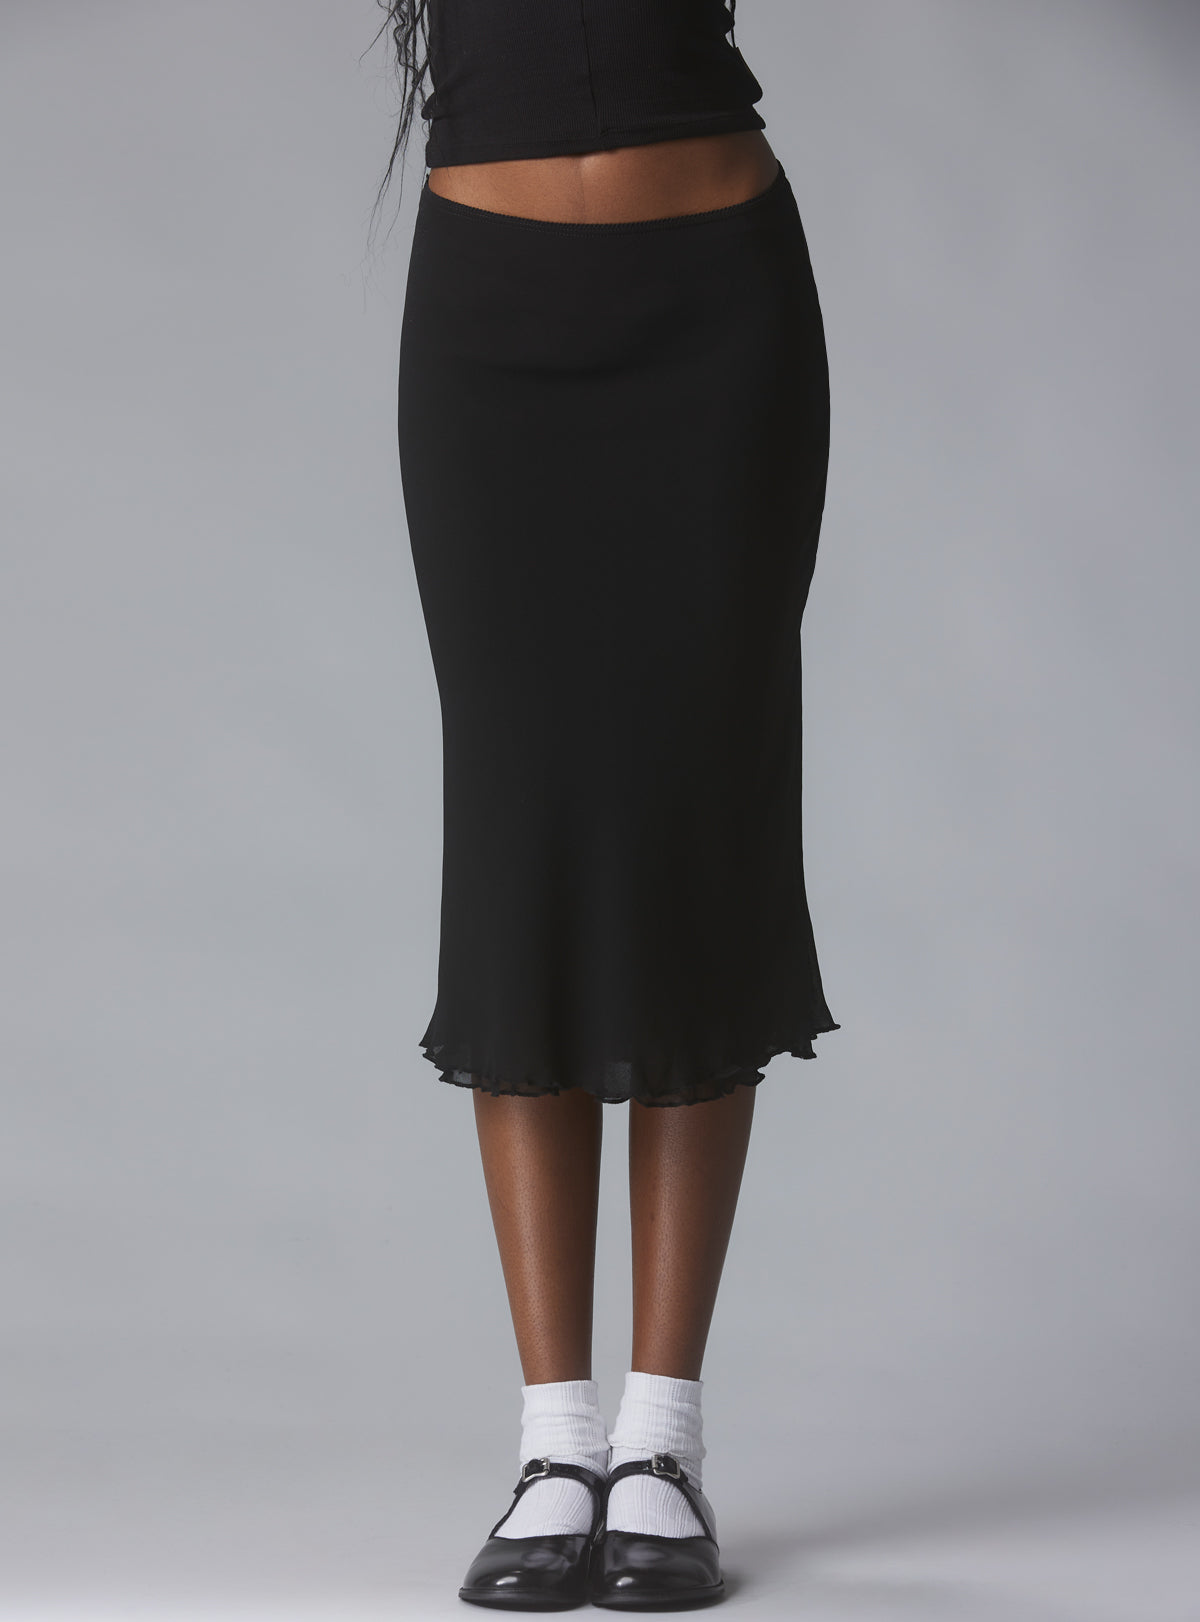 XO Skirt